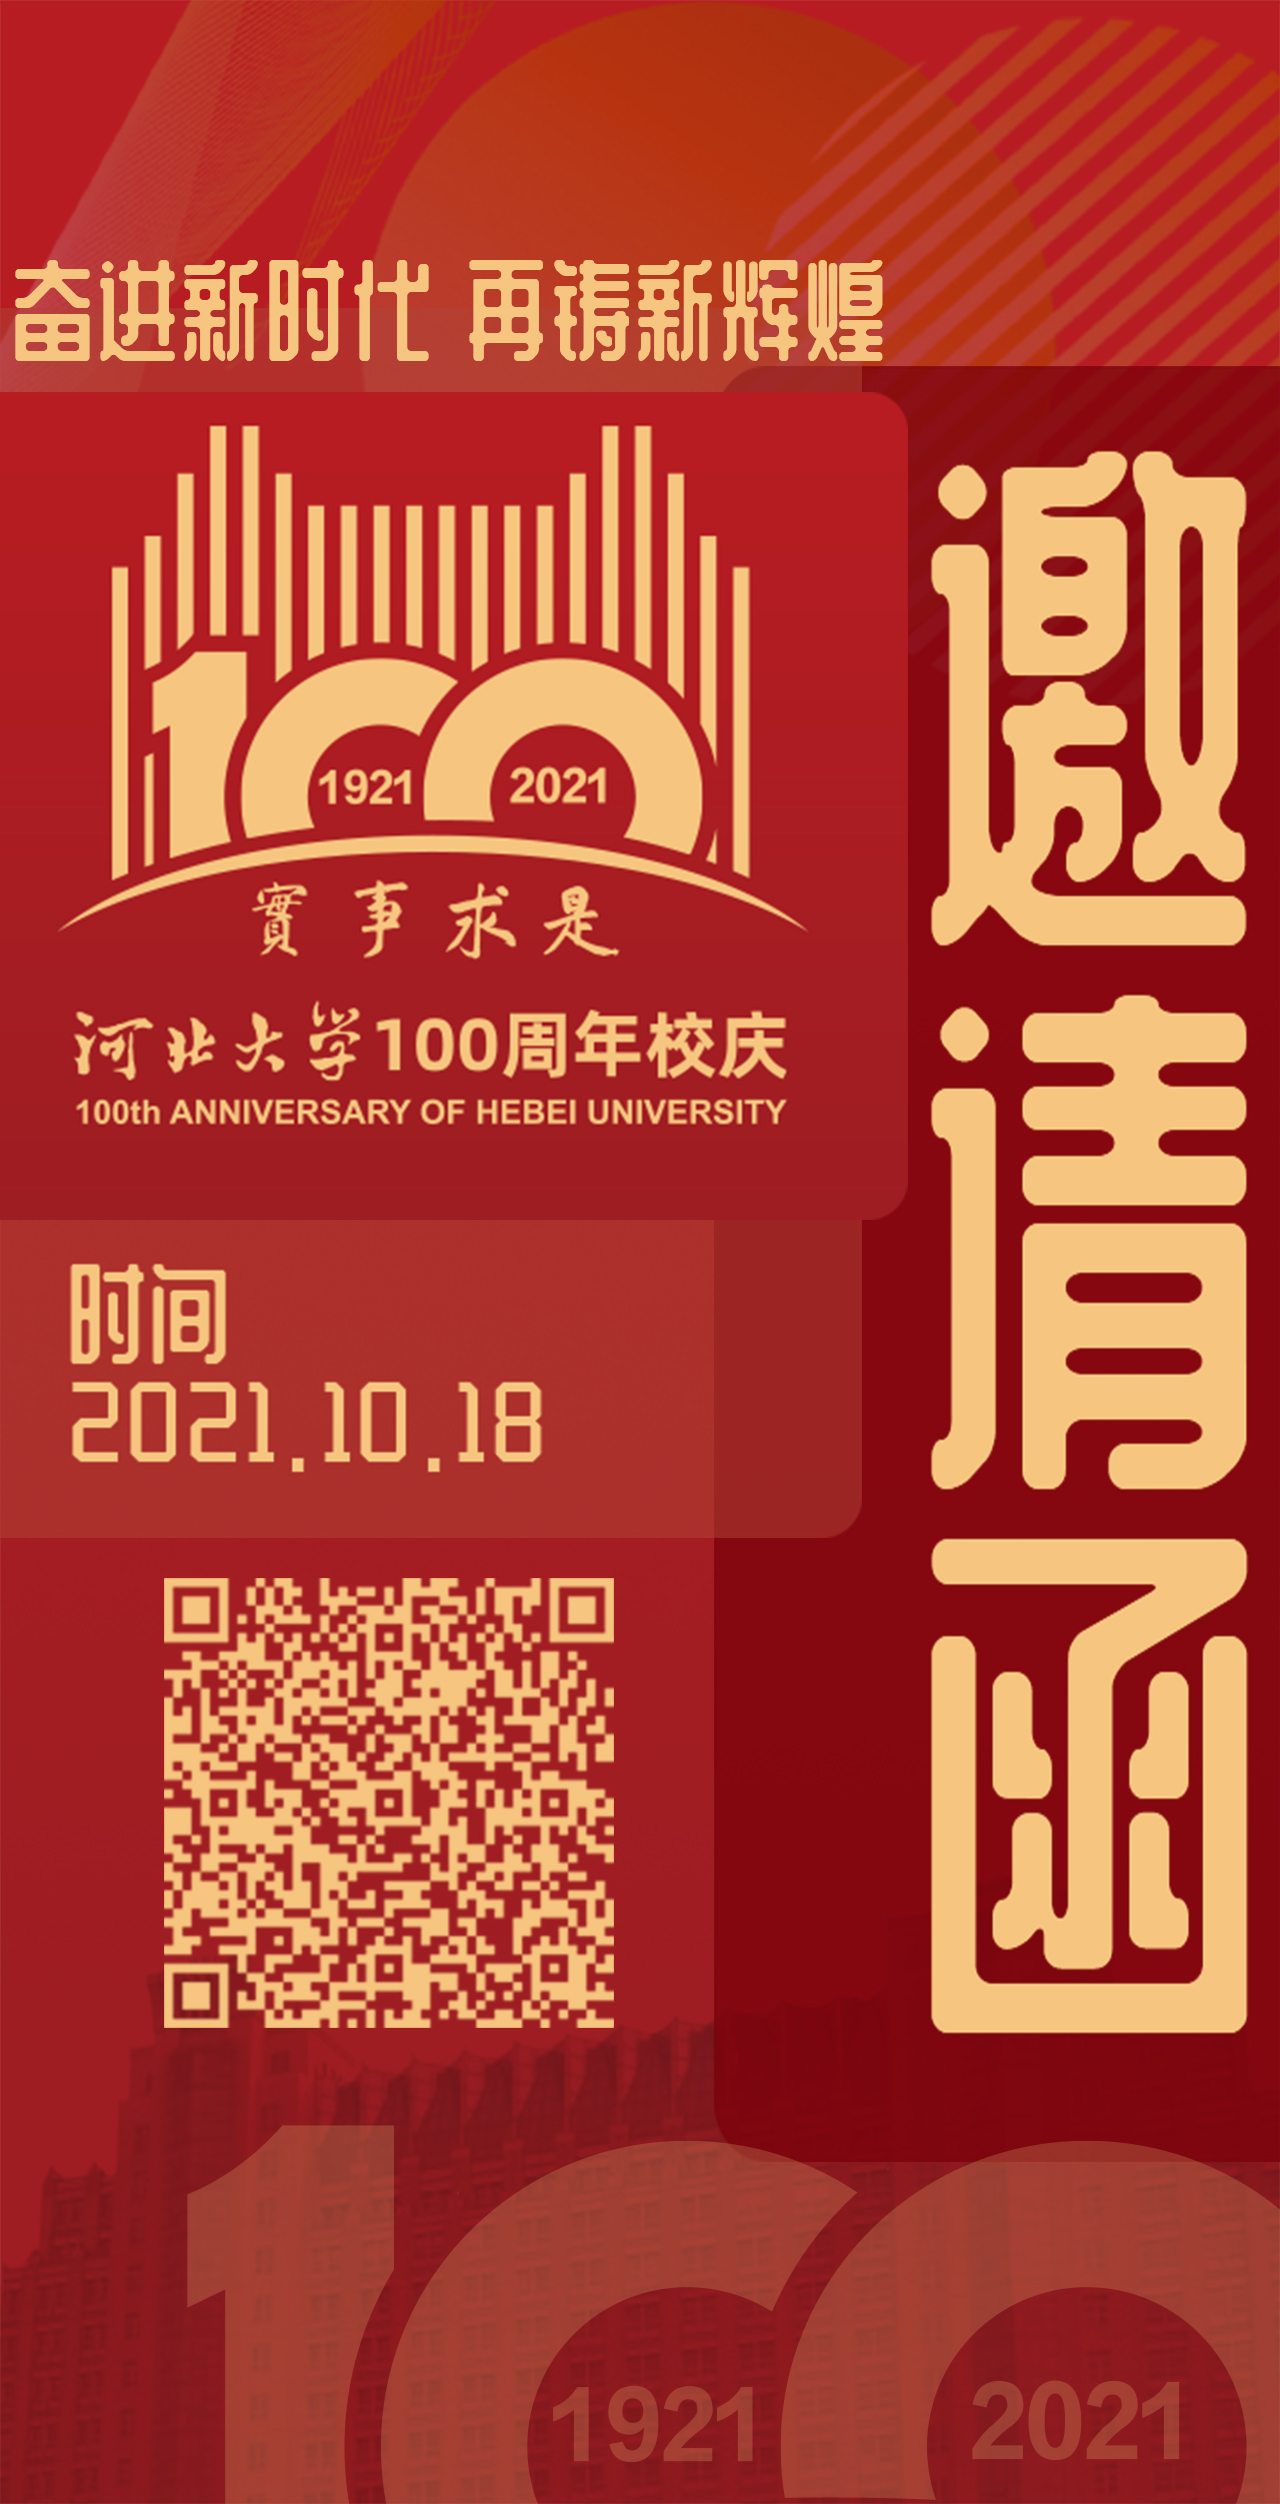 邀请函来了！10月18日来参加河北大学建校100周年活动吧